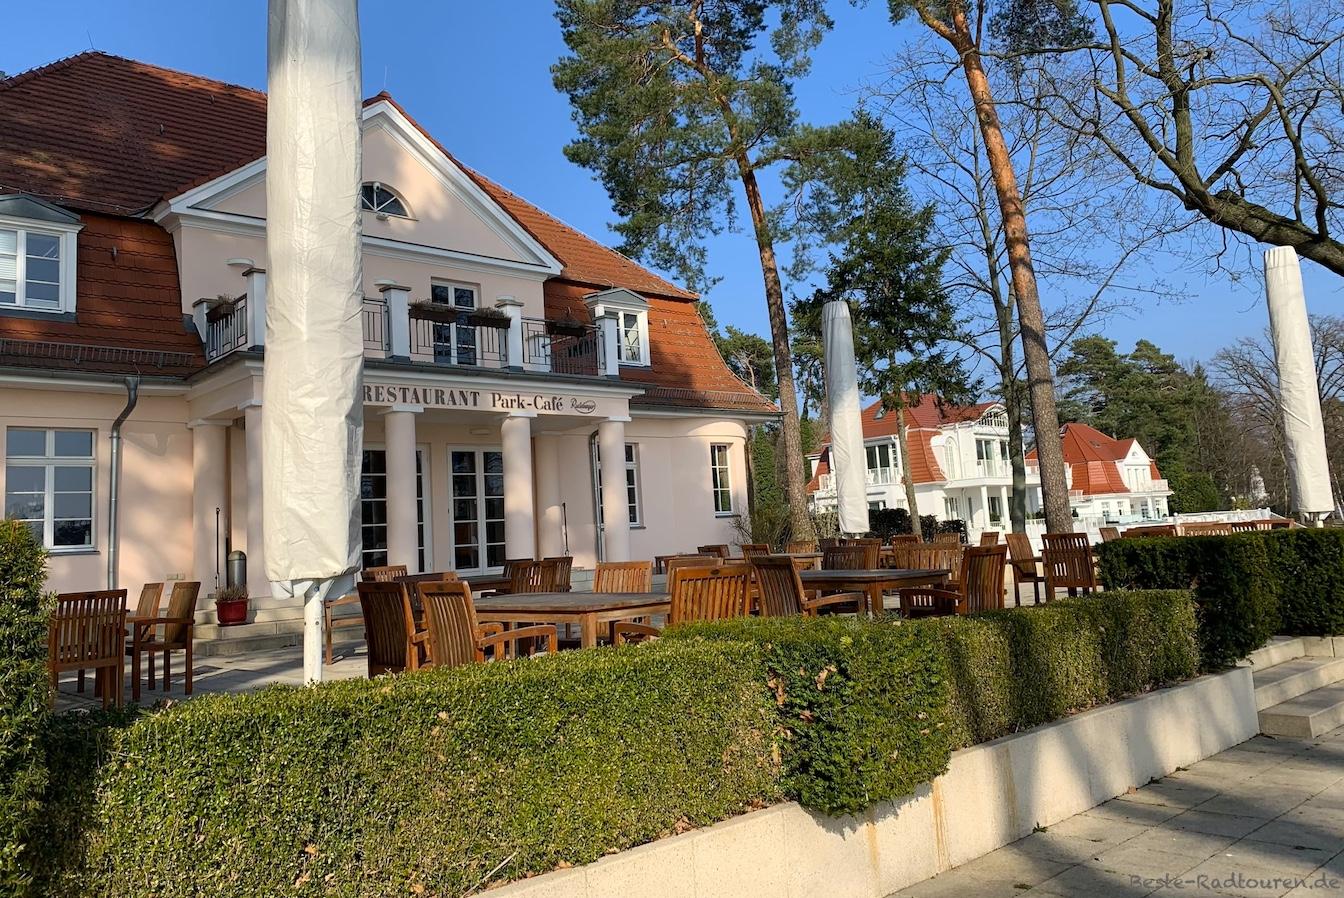 Bad Saarow Seepromenade, Park-Cafe und Restaurant